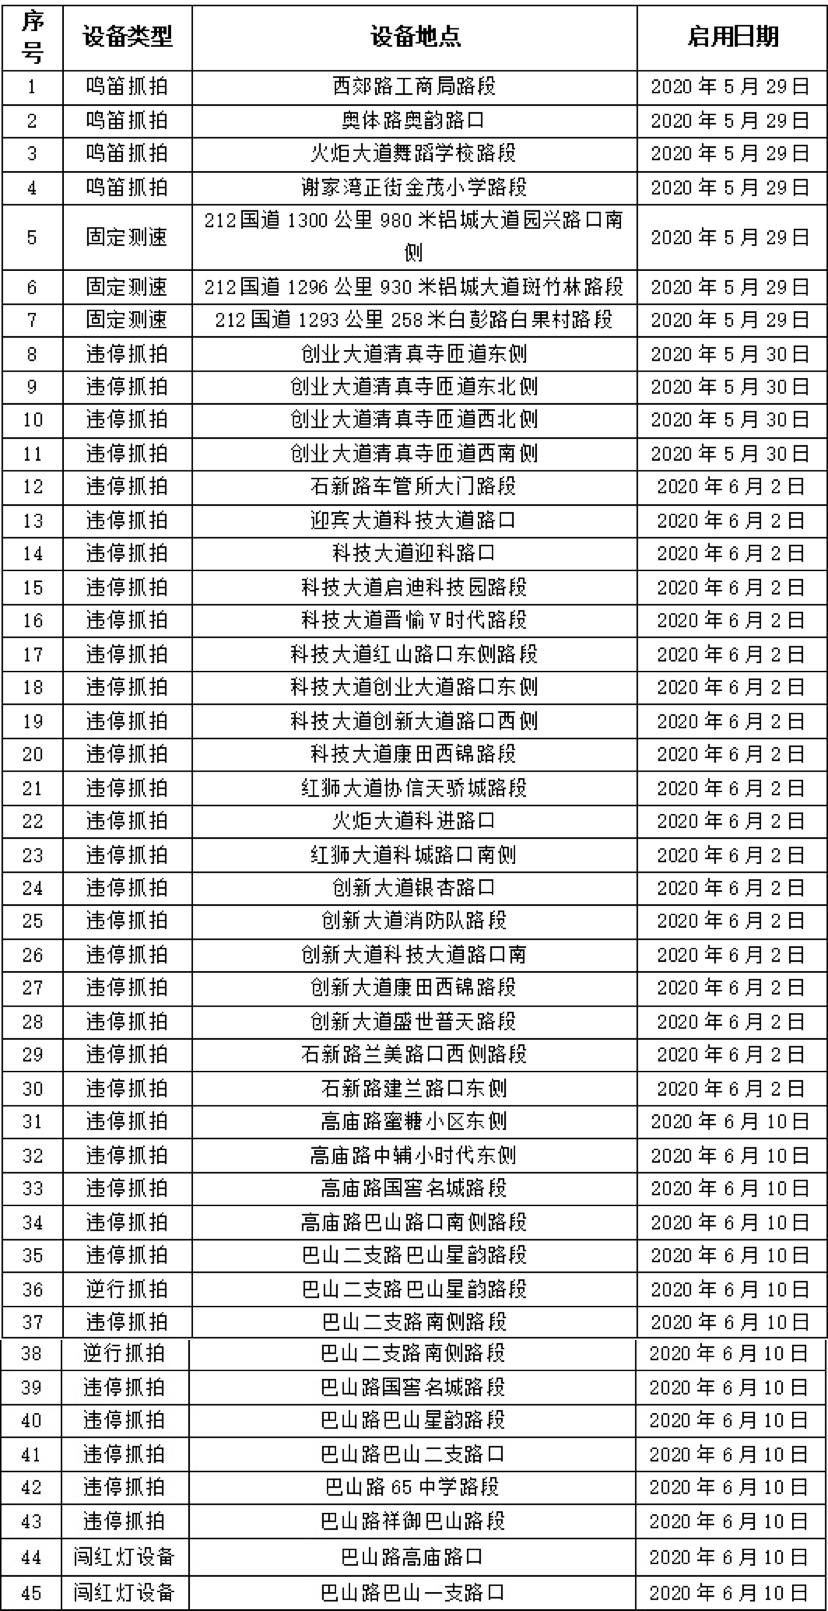 【B】重慶九龍坡區新增45處交通違法電子抓拍設備